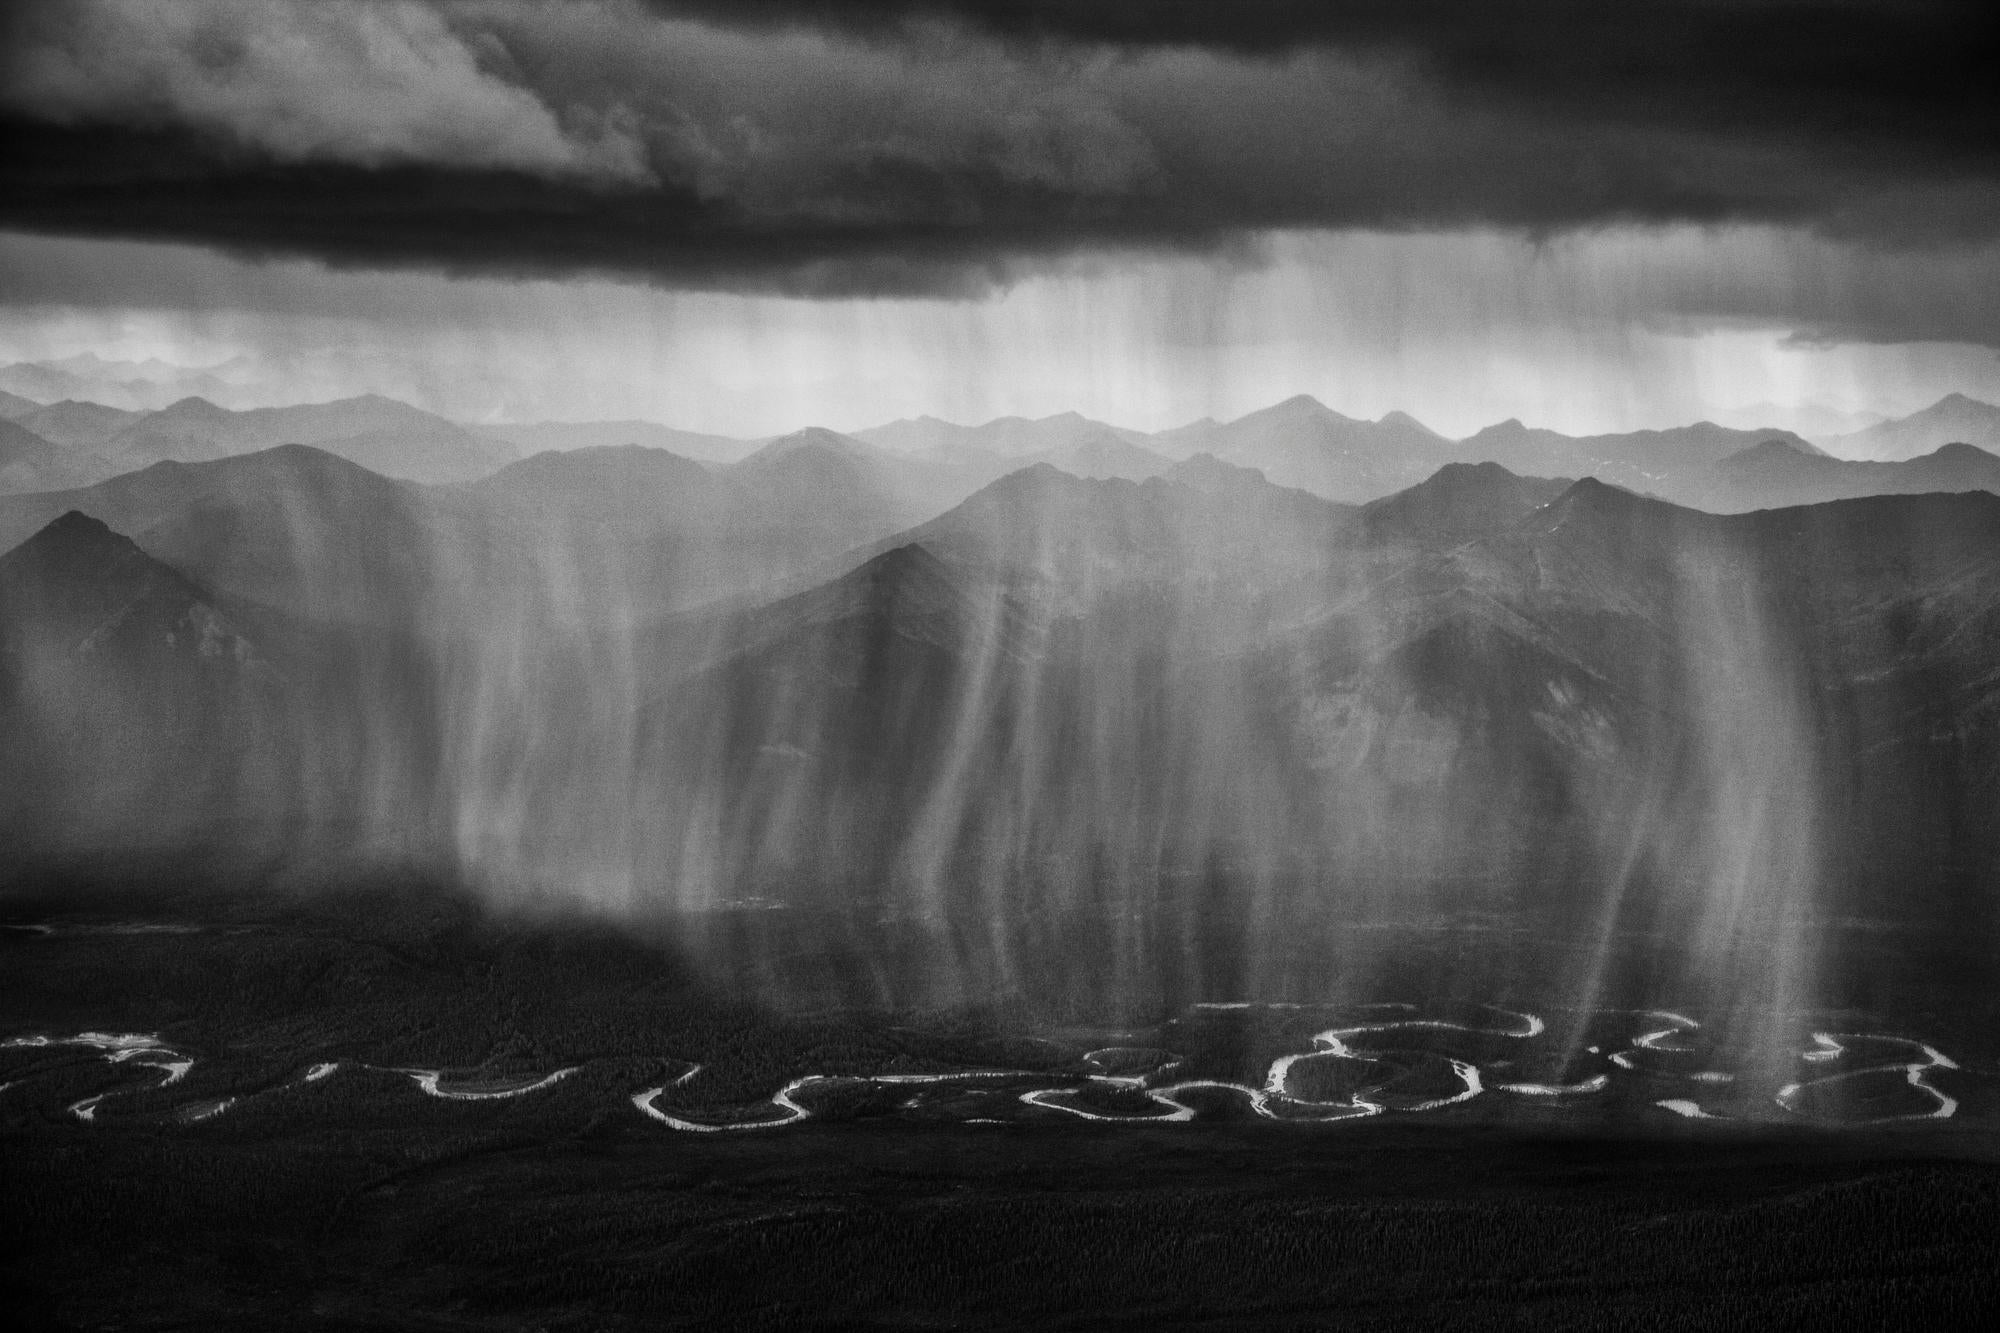 Pluies dans le bassin versant de la Peel
Yukon, Canada, 2011.

24 x 42.5 in / 61 x 108 cm / Edition de 20 exemplaires
36 x 64 in / 91.4 x 162.6 cm / Edition de 10 exemplaires

"Une pluie d'été tombe sur la rivière Peel, dans le nord du Territoire du